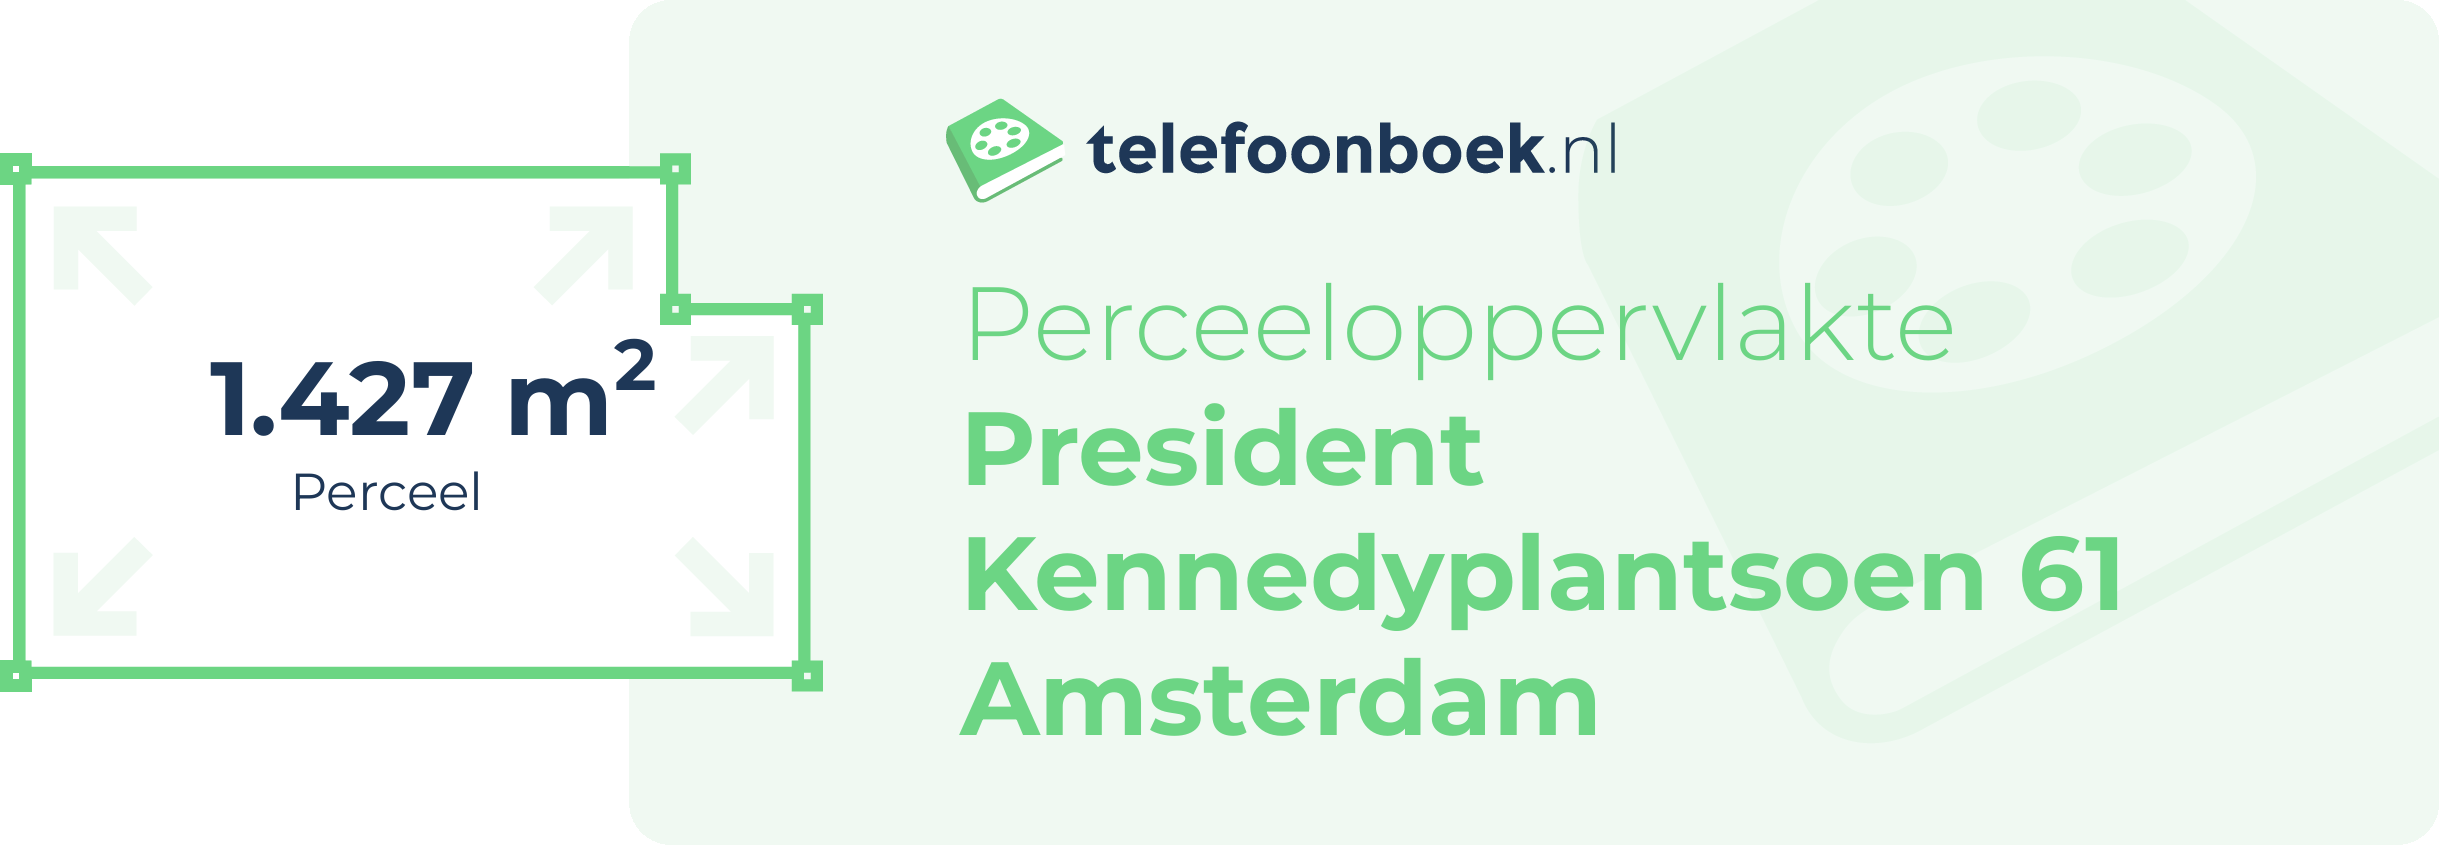 Perceeloppervlakte President Kennedyplantsoen 61 Amsterdam